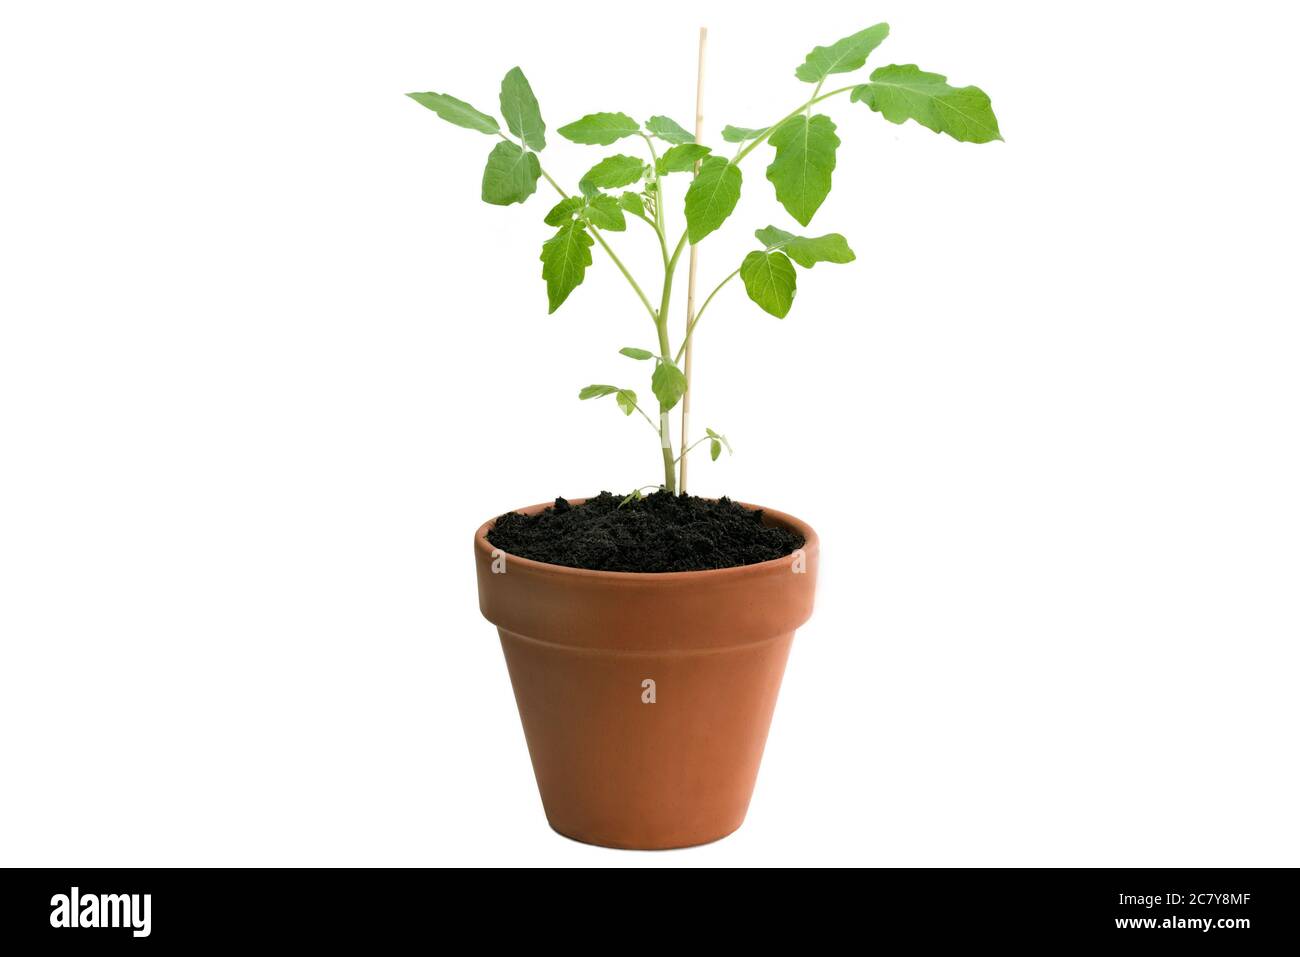 Plante de tomate en pot isolée sur fond blanc Banque D'Images